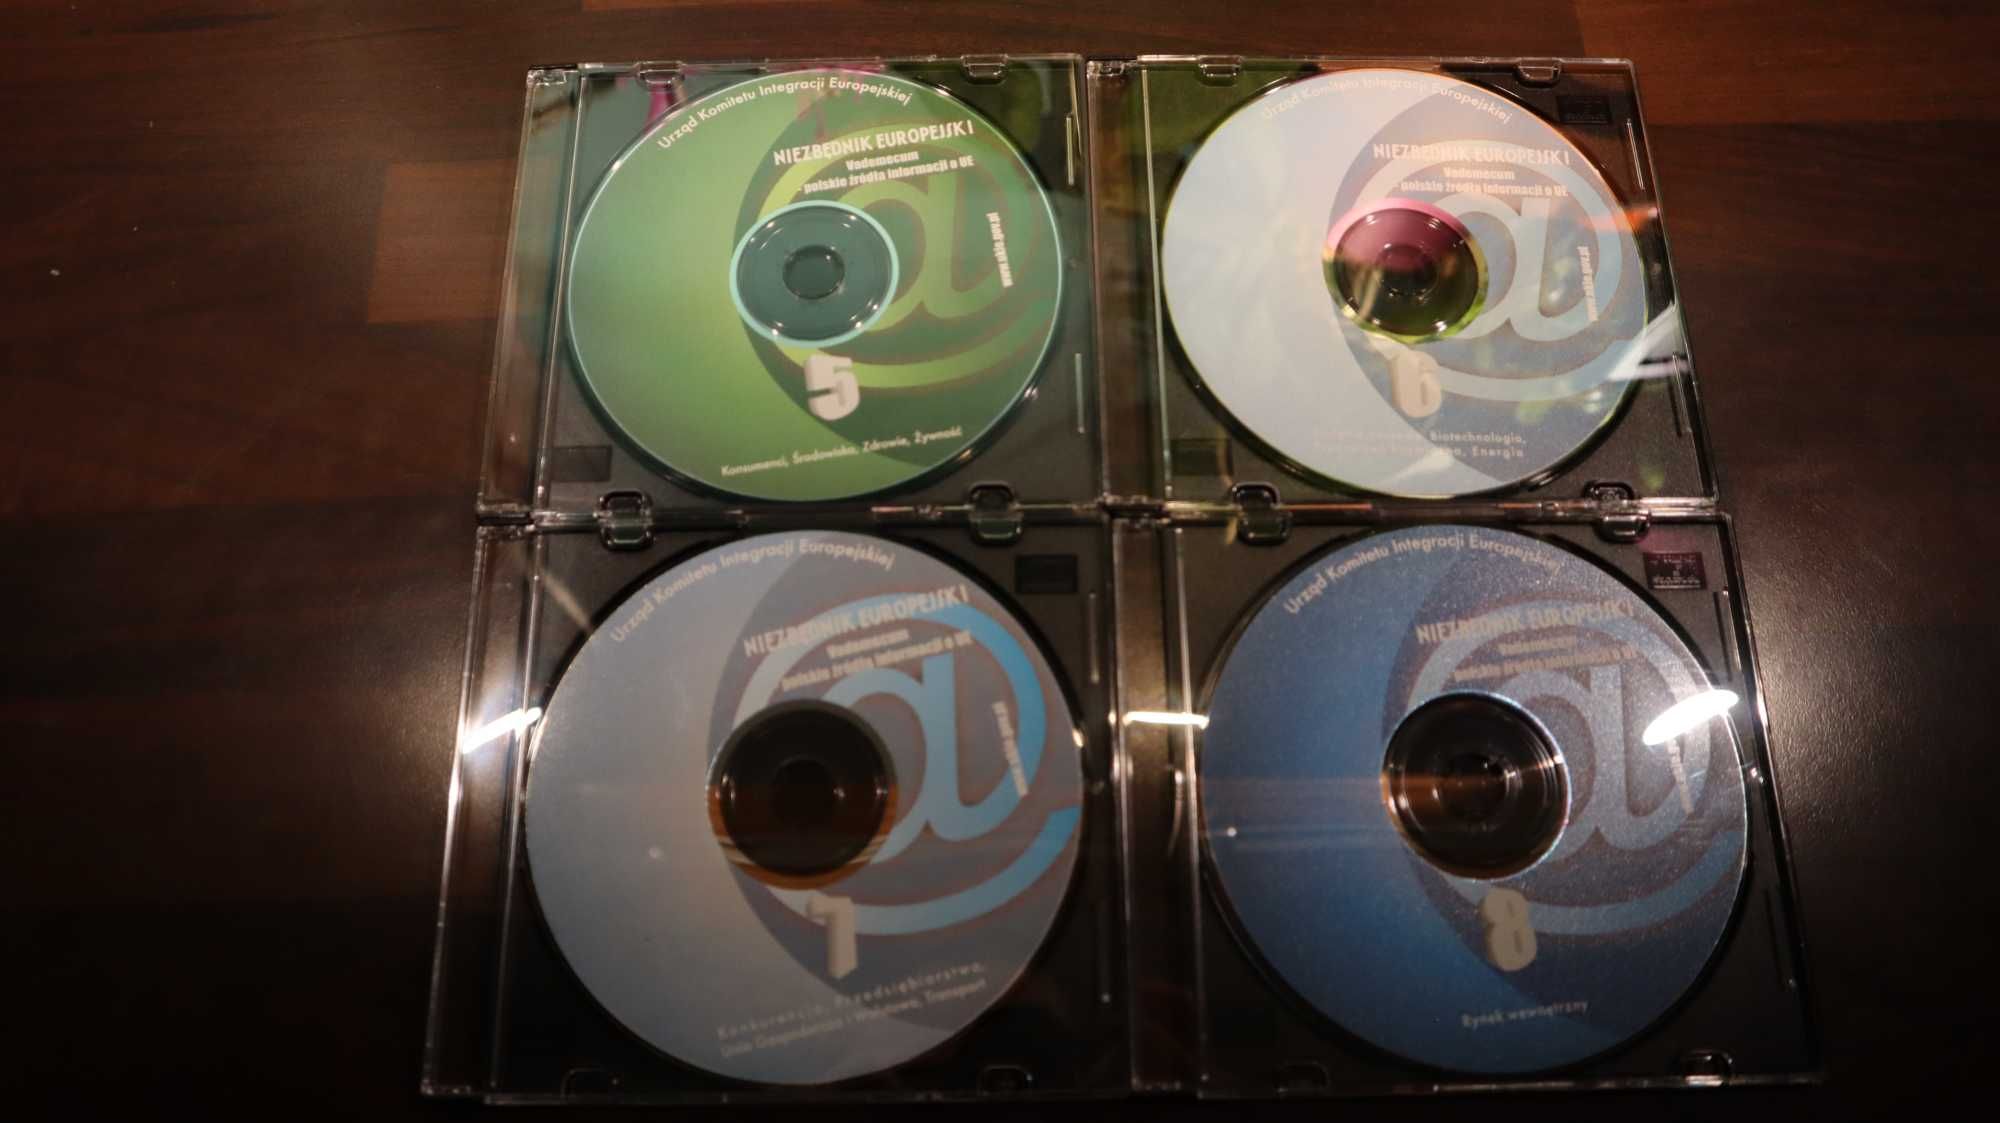 Niezbędnik Europejski 10 CD